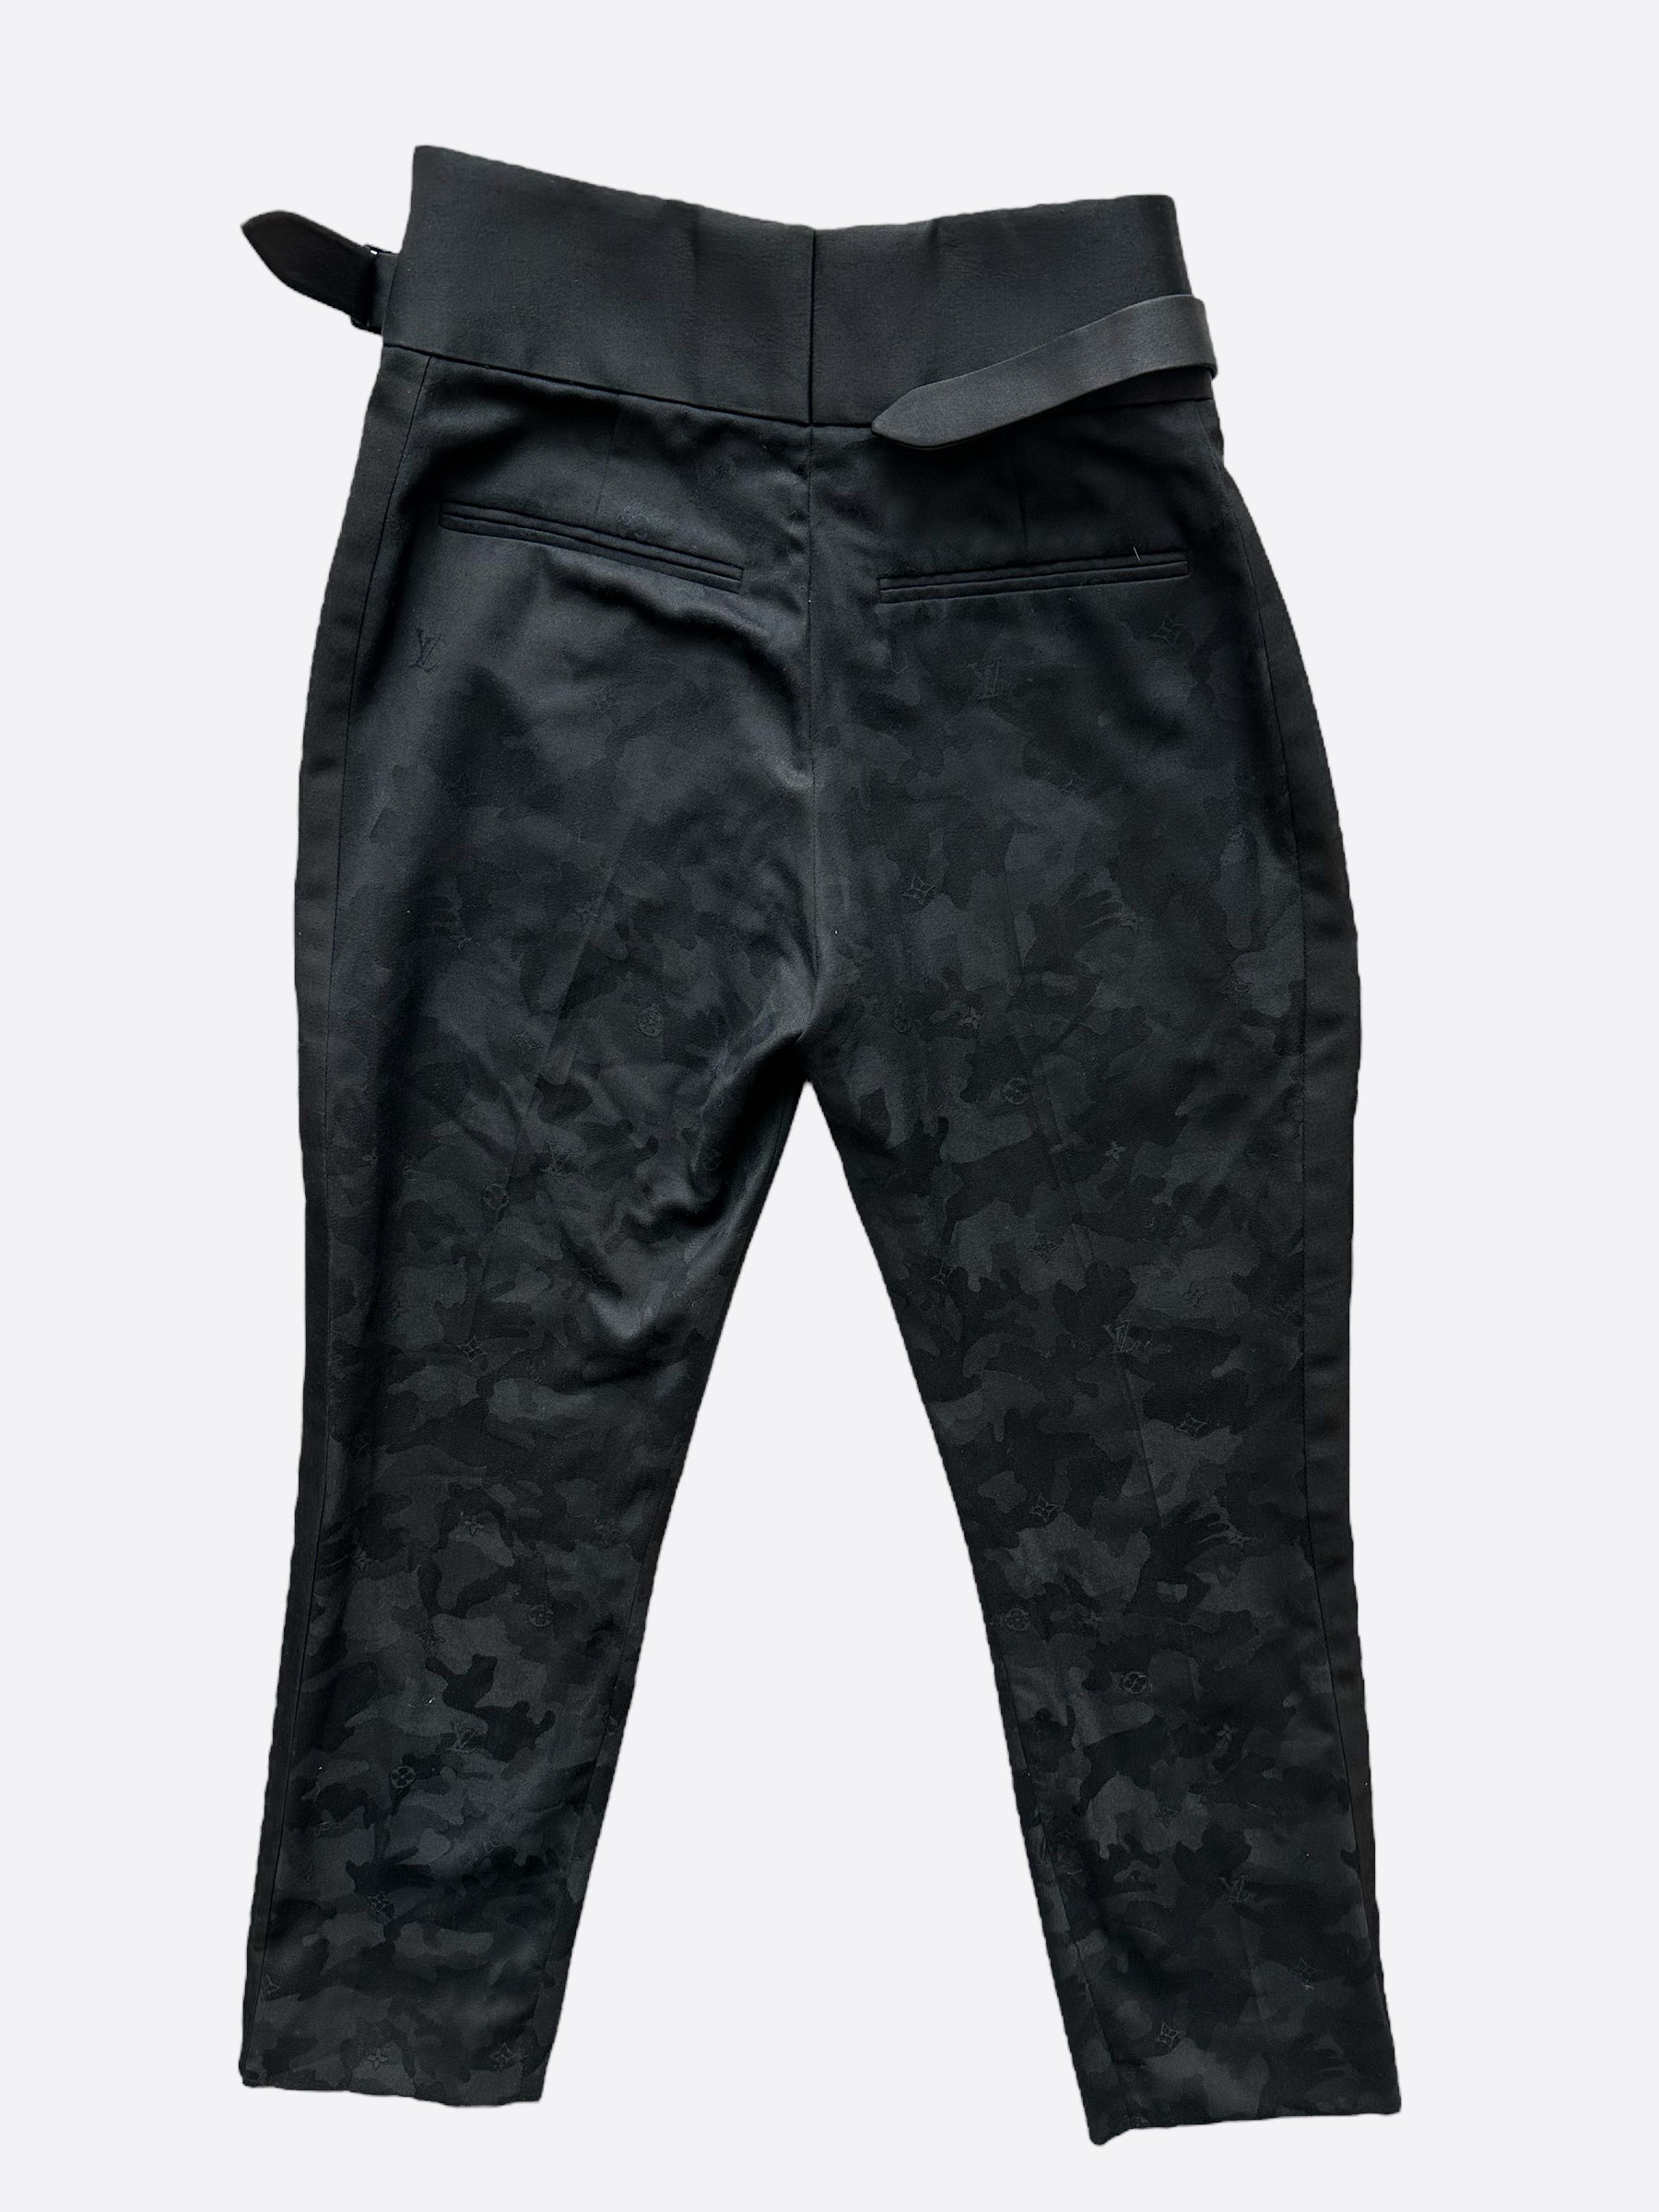 Louis Vuitton Black Dress Pants